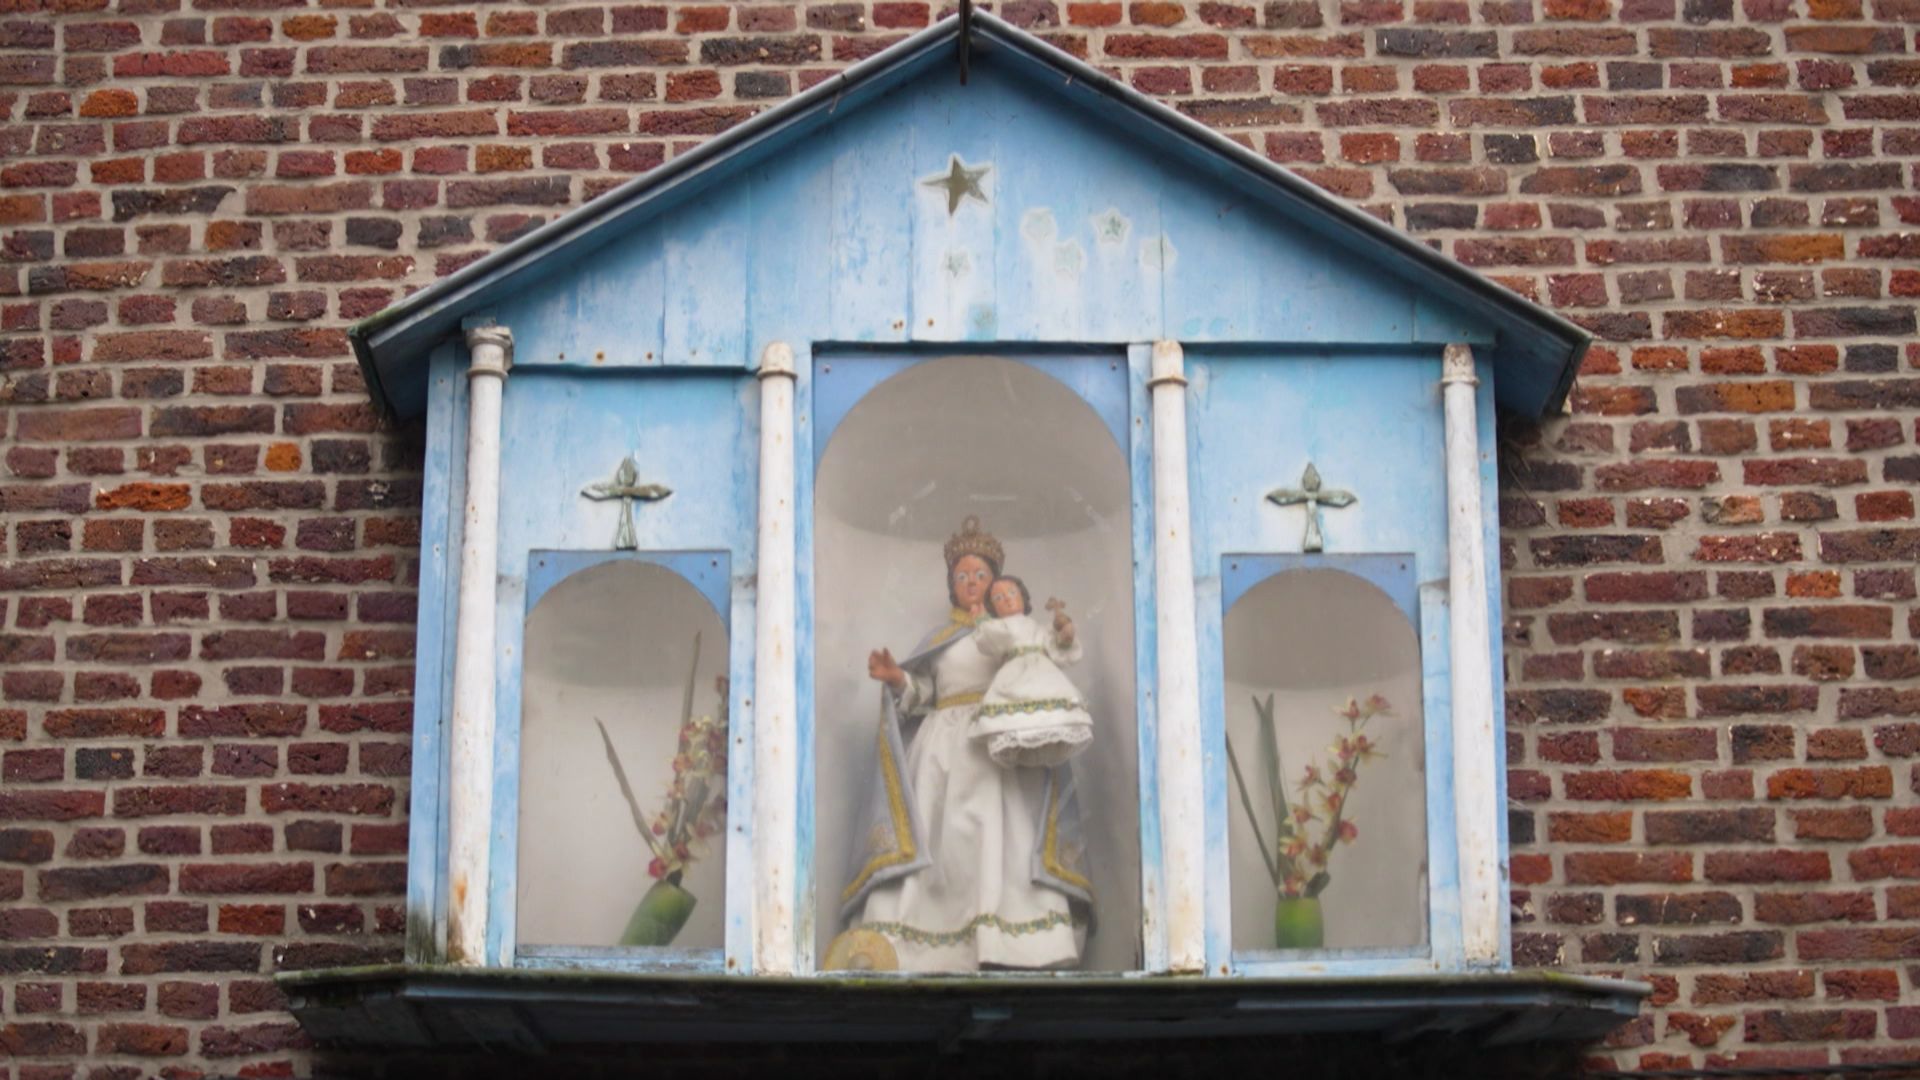 Potale de la Vierge à l'Enfant, qui se situe dans une petite cour, au bout de deux impasses : l'impasse de l'Ange et l'impasse de la Couronne. 